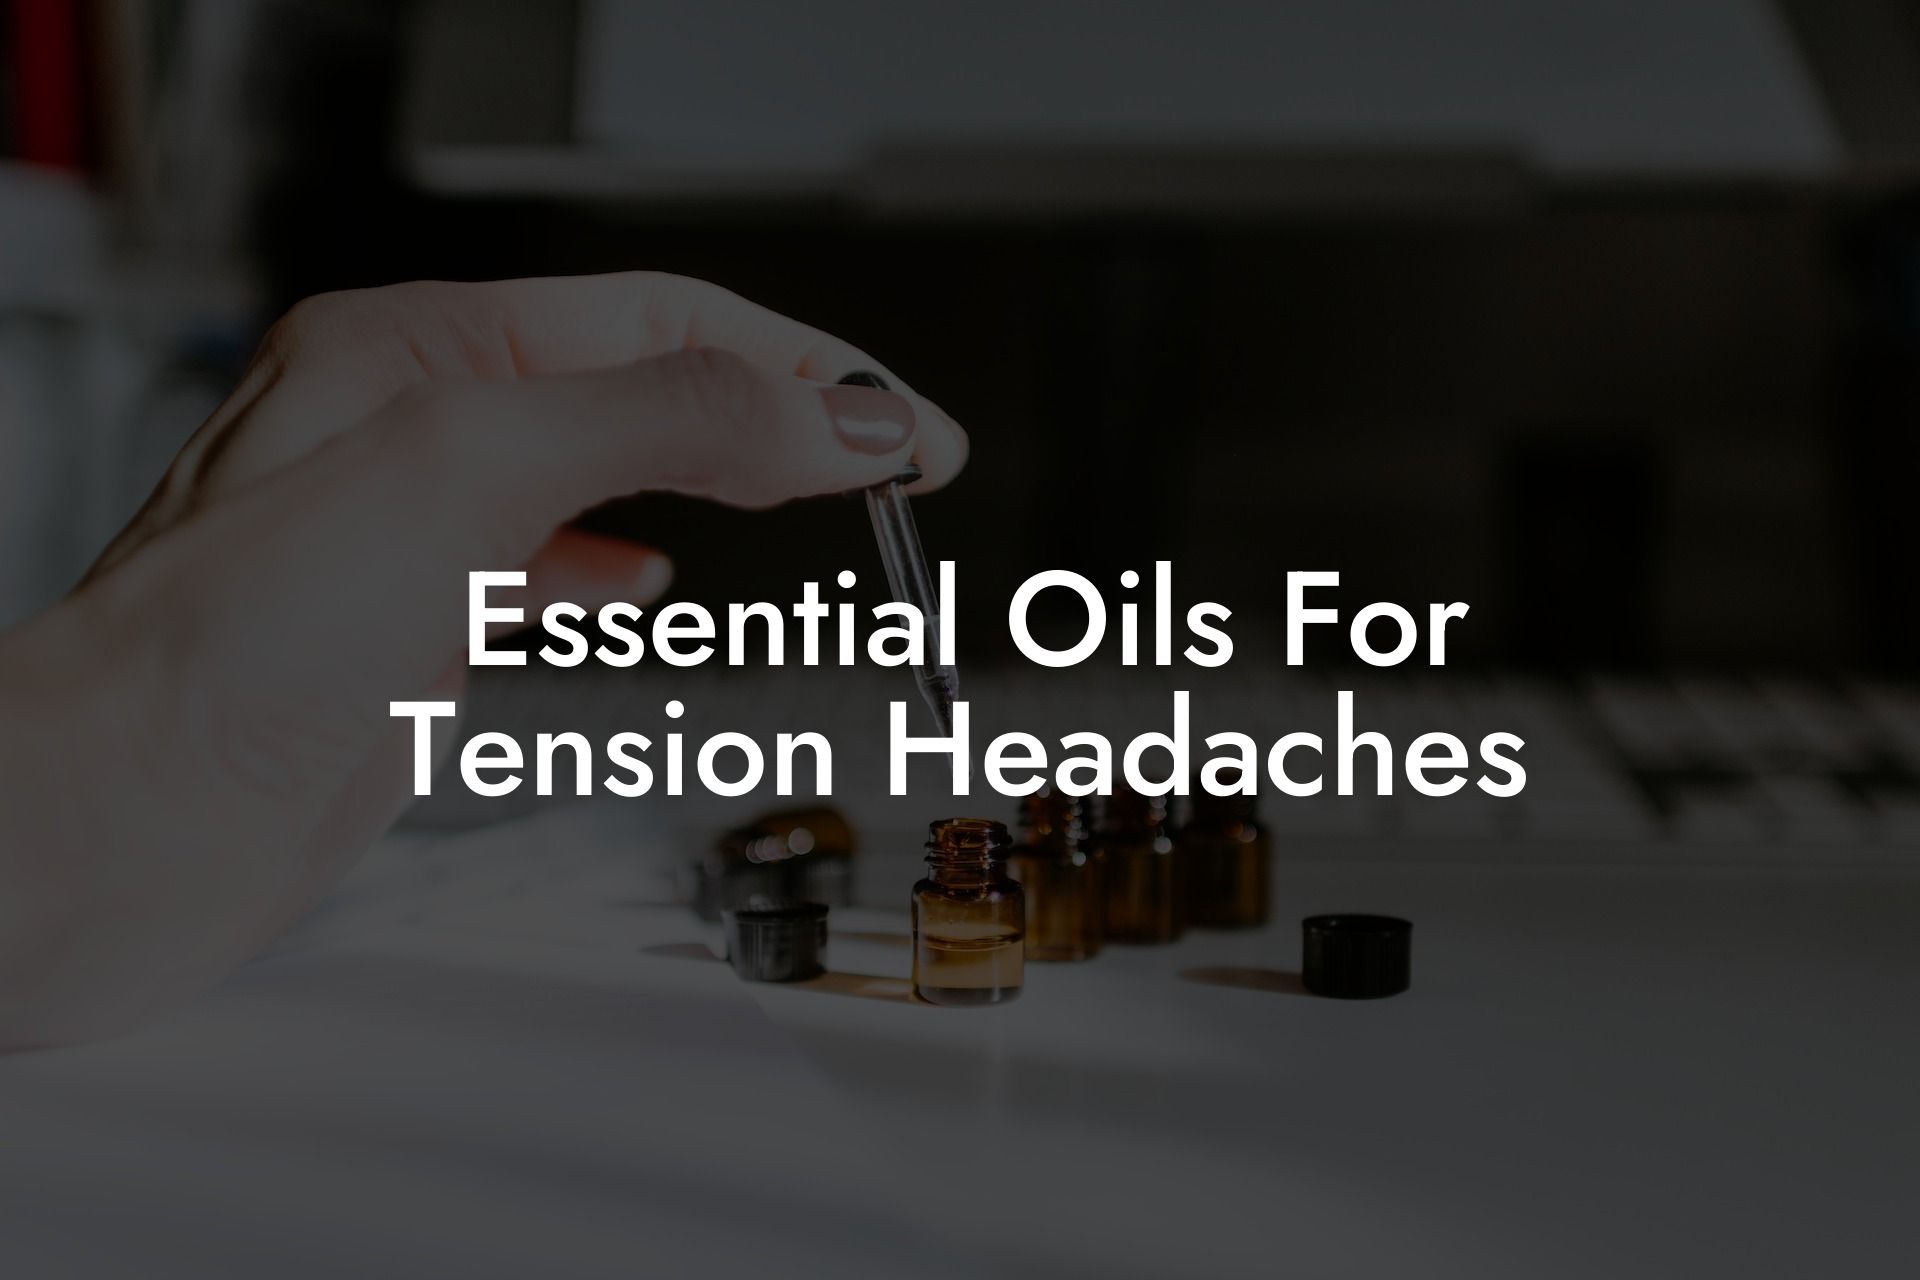 Essential Oils For Tension Headaches